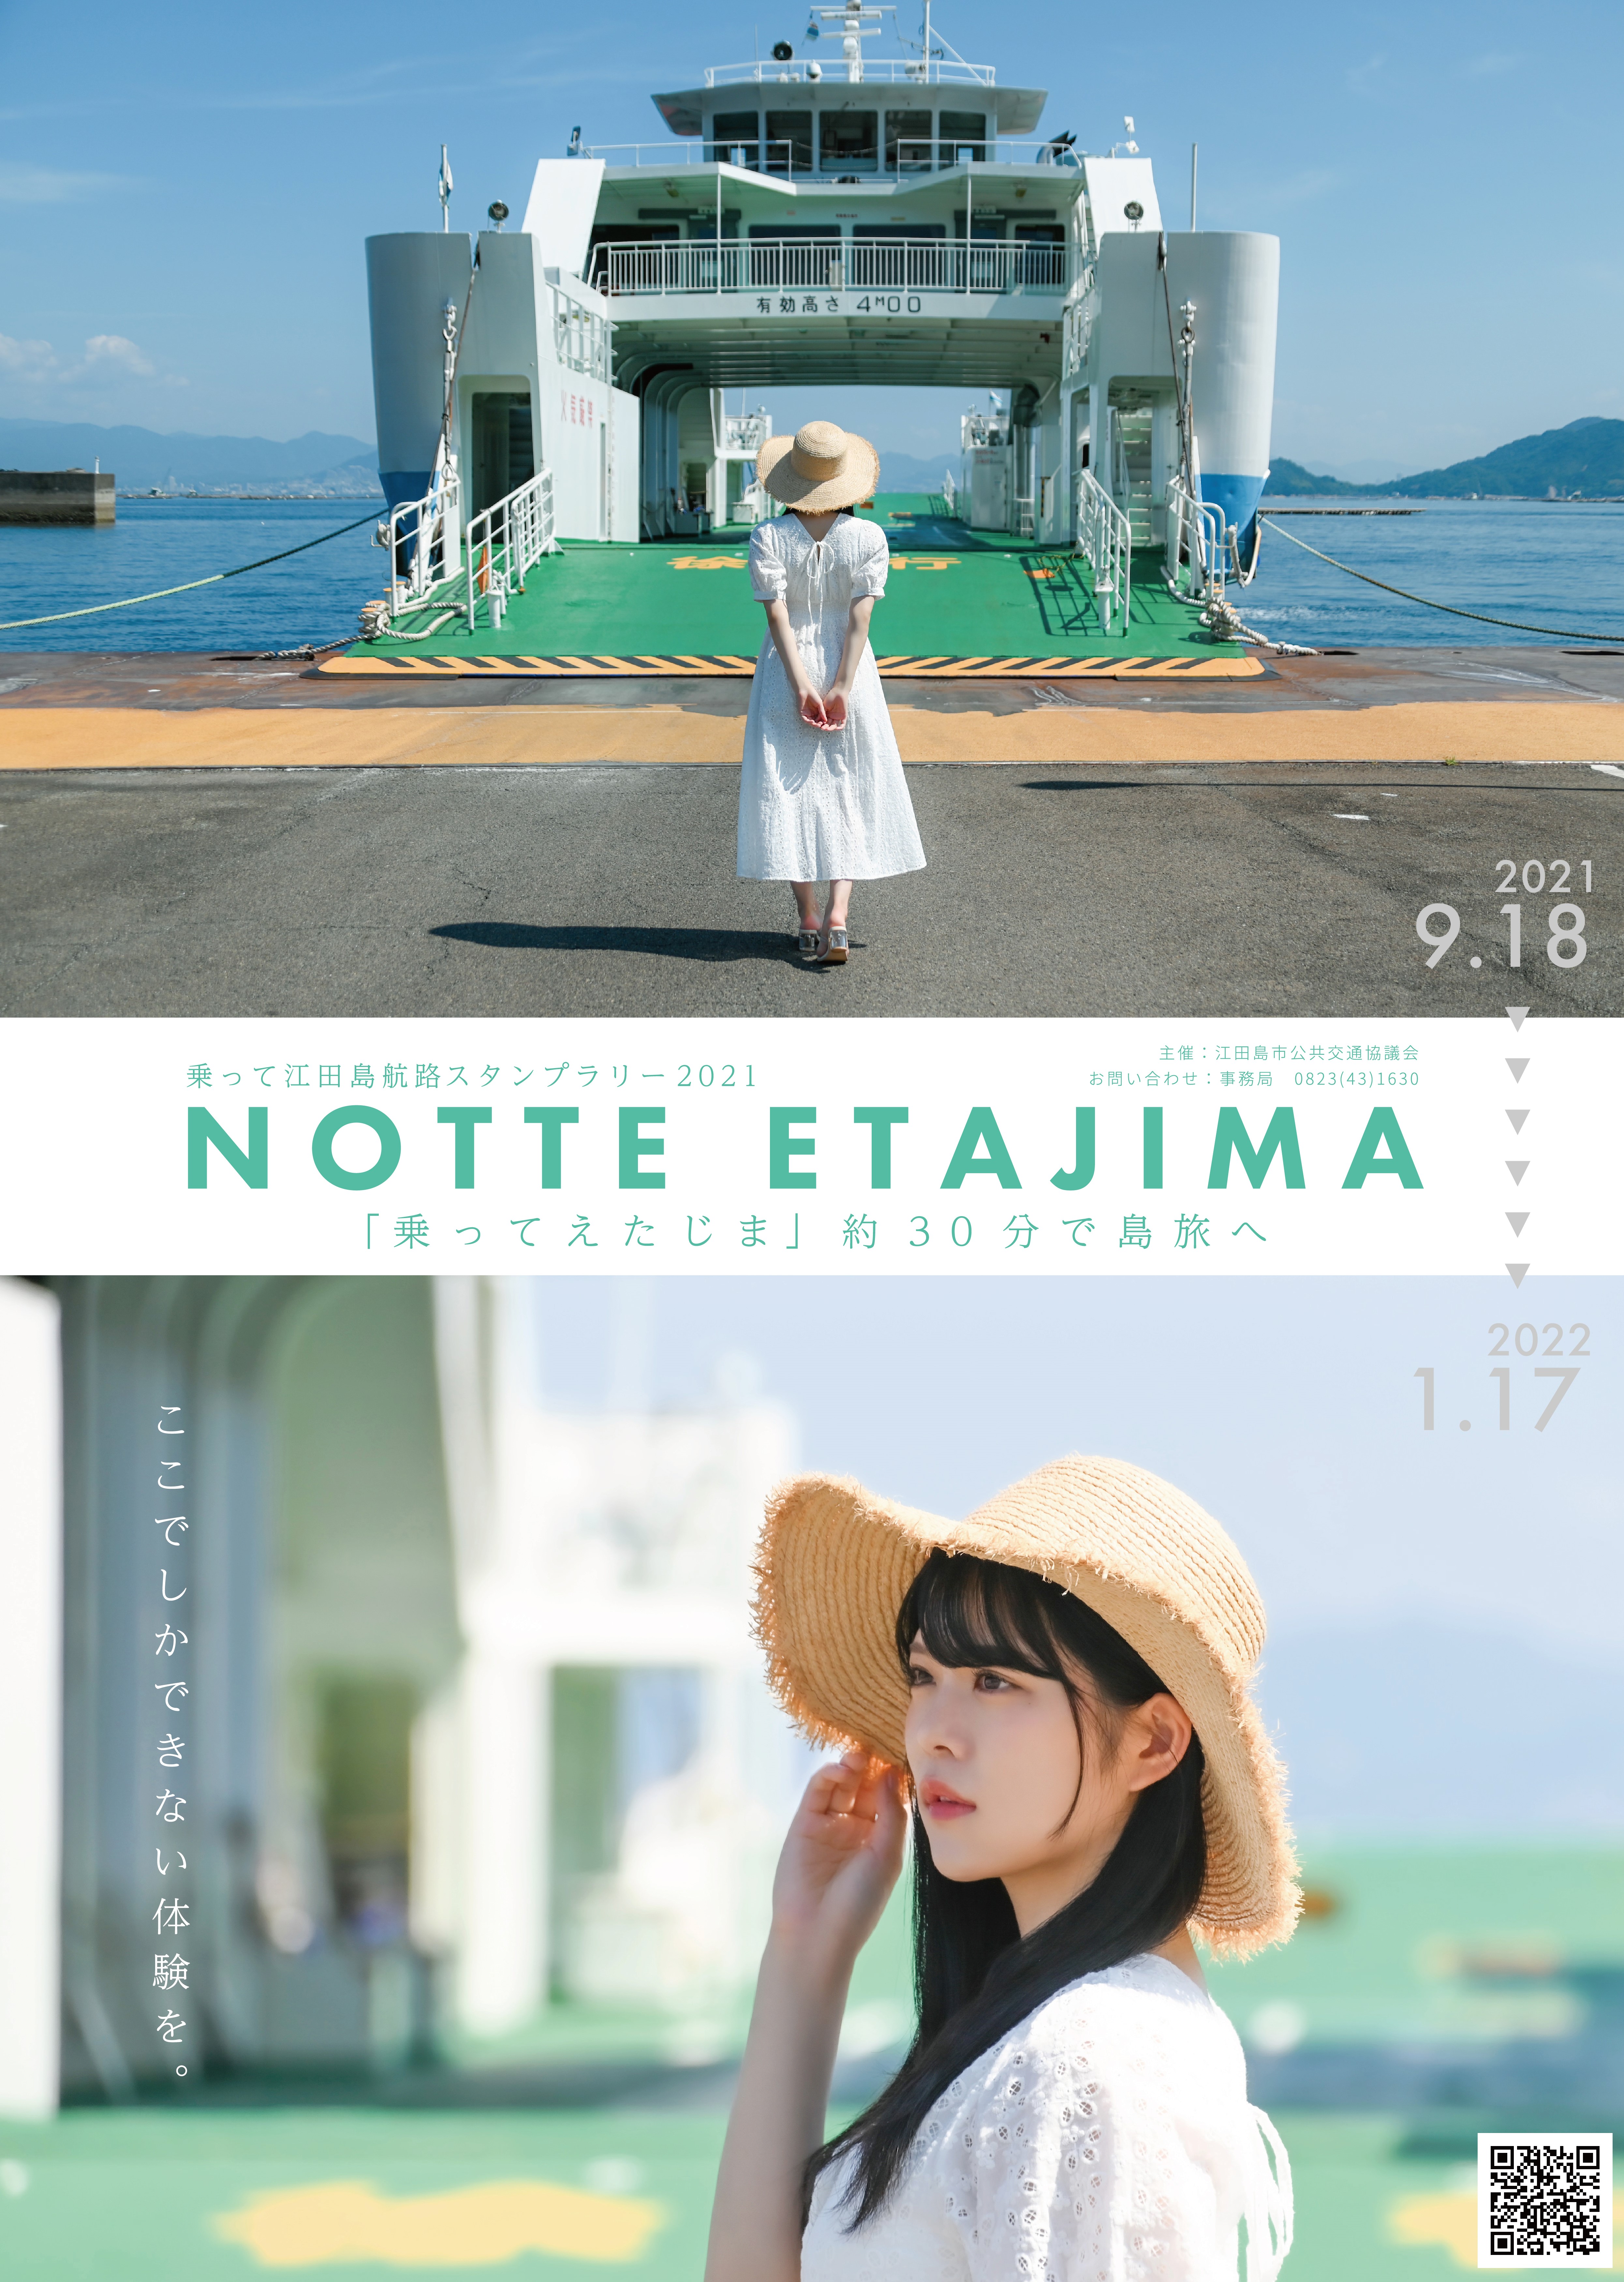 今年も広報大使 Stu48矢野帆夏がイメージキャラクターを担当 乗って江田島航路スタンプラリー21 開催 江田島市のプレスリリース